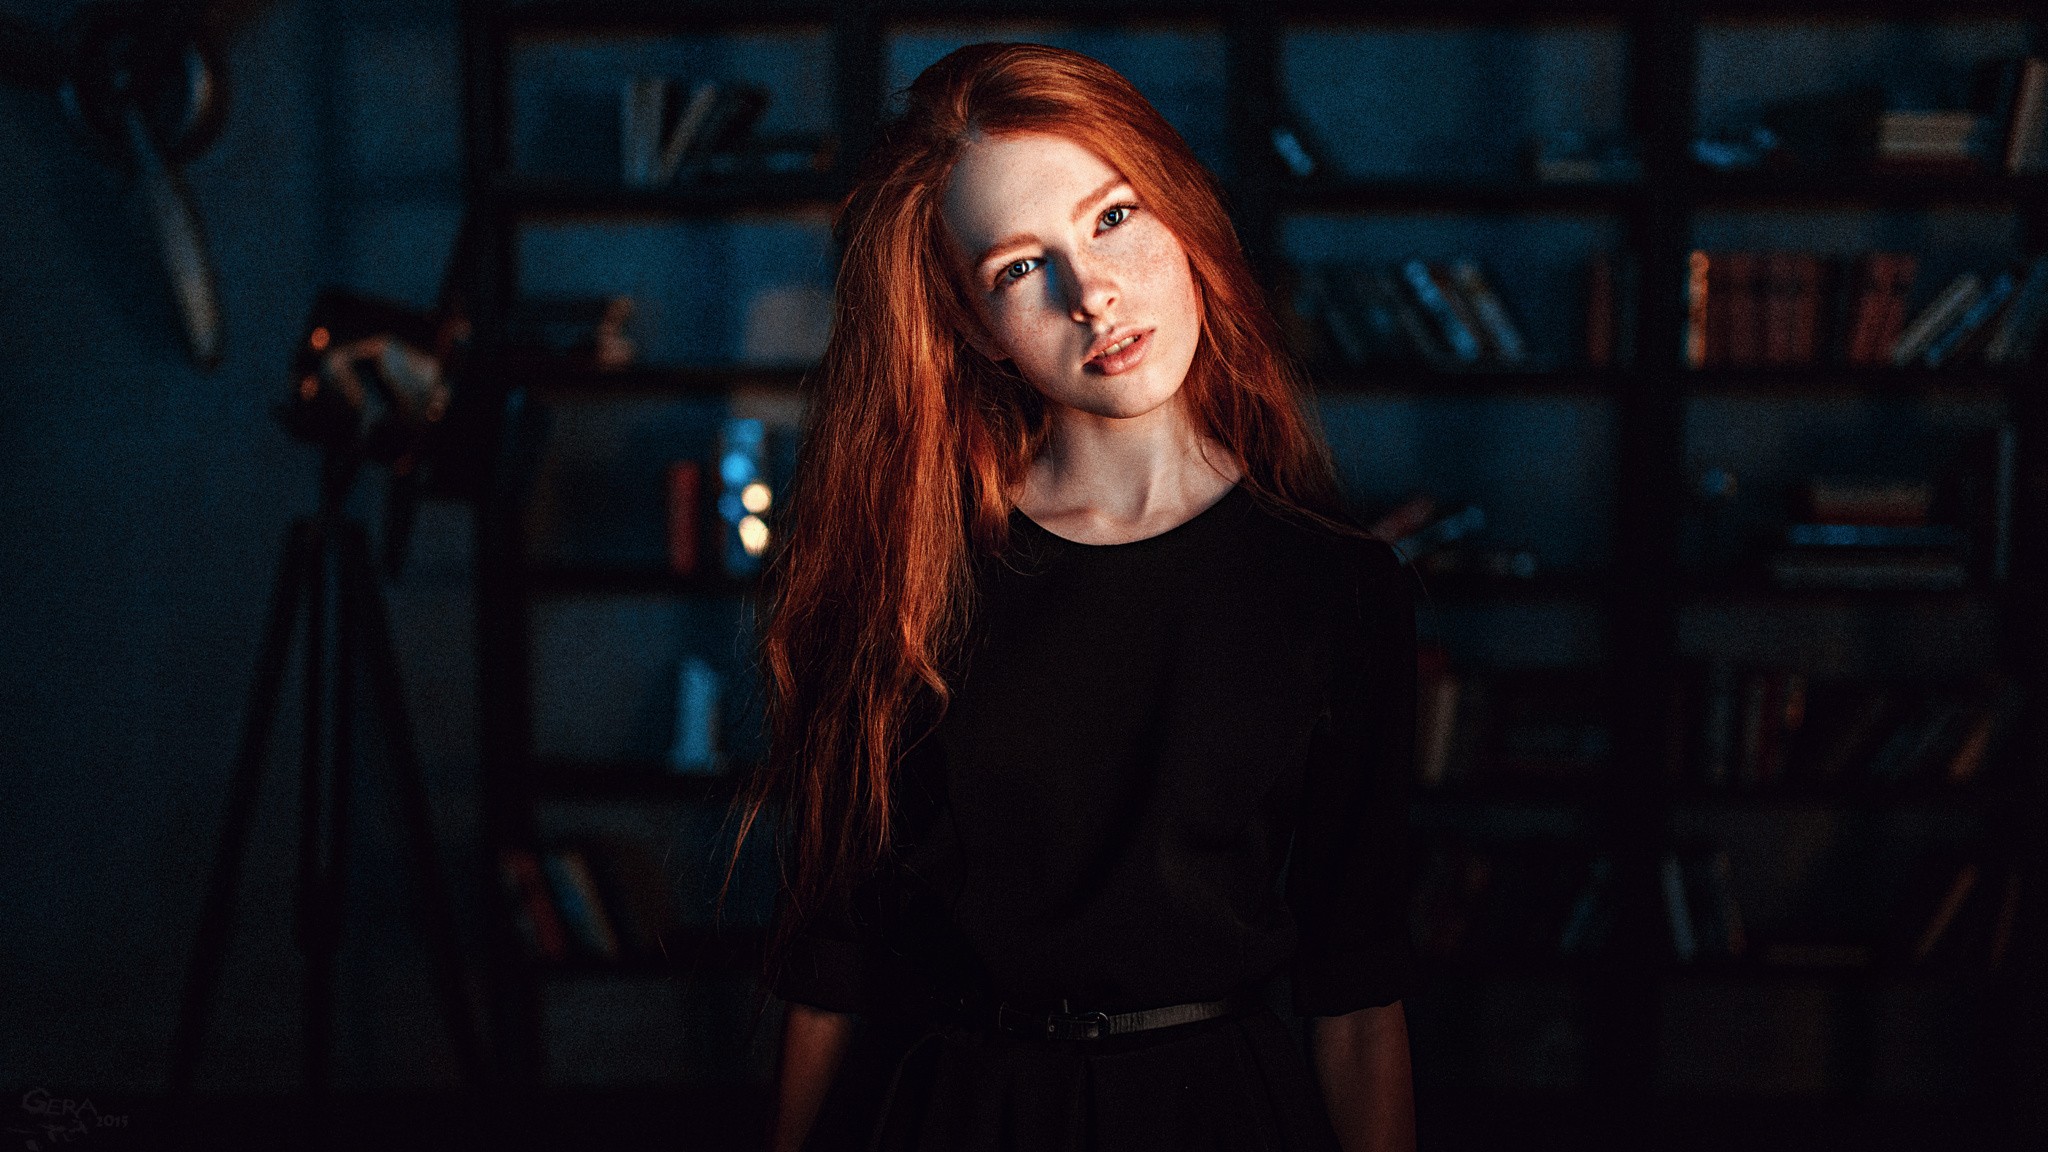 Katya Voronina Redhead Freckles Black Clothing Looking At Viewer Long Hair 2048x1152